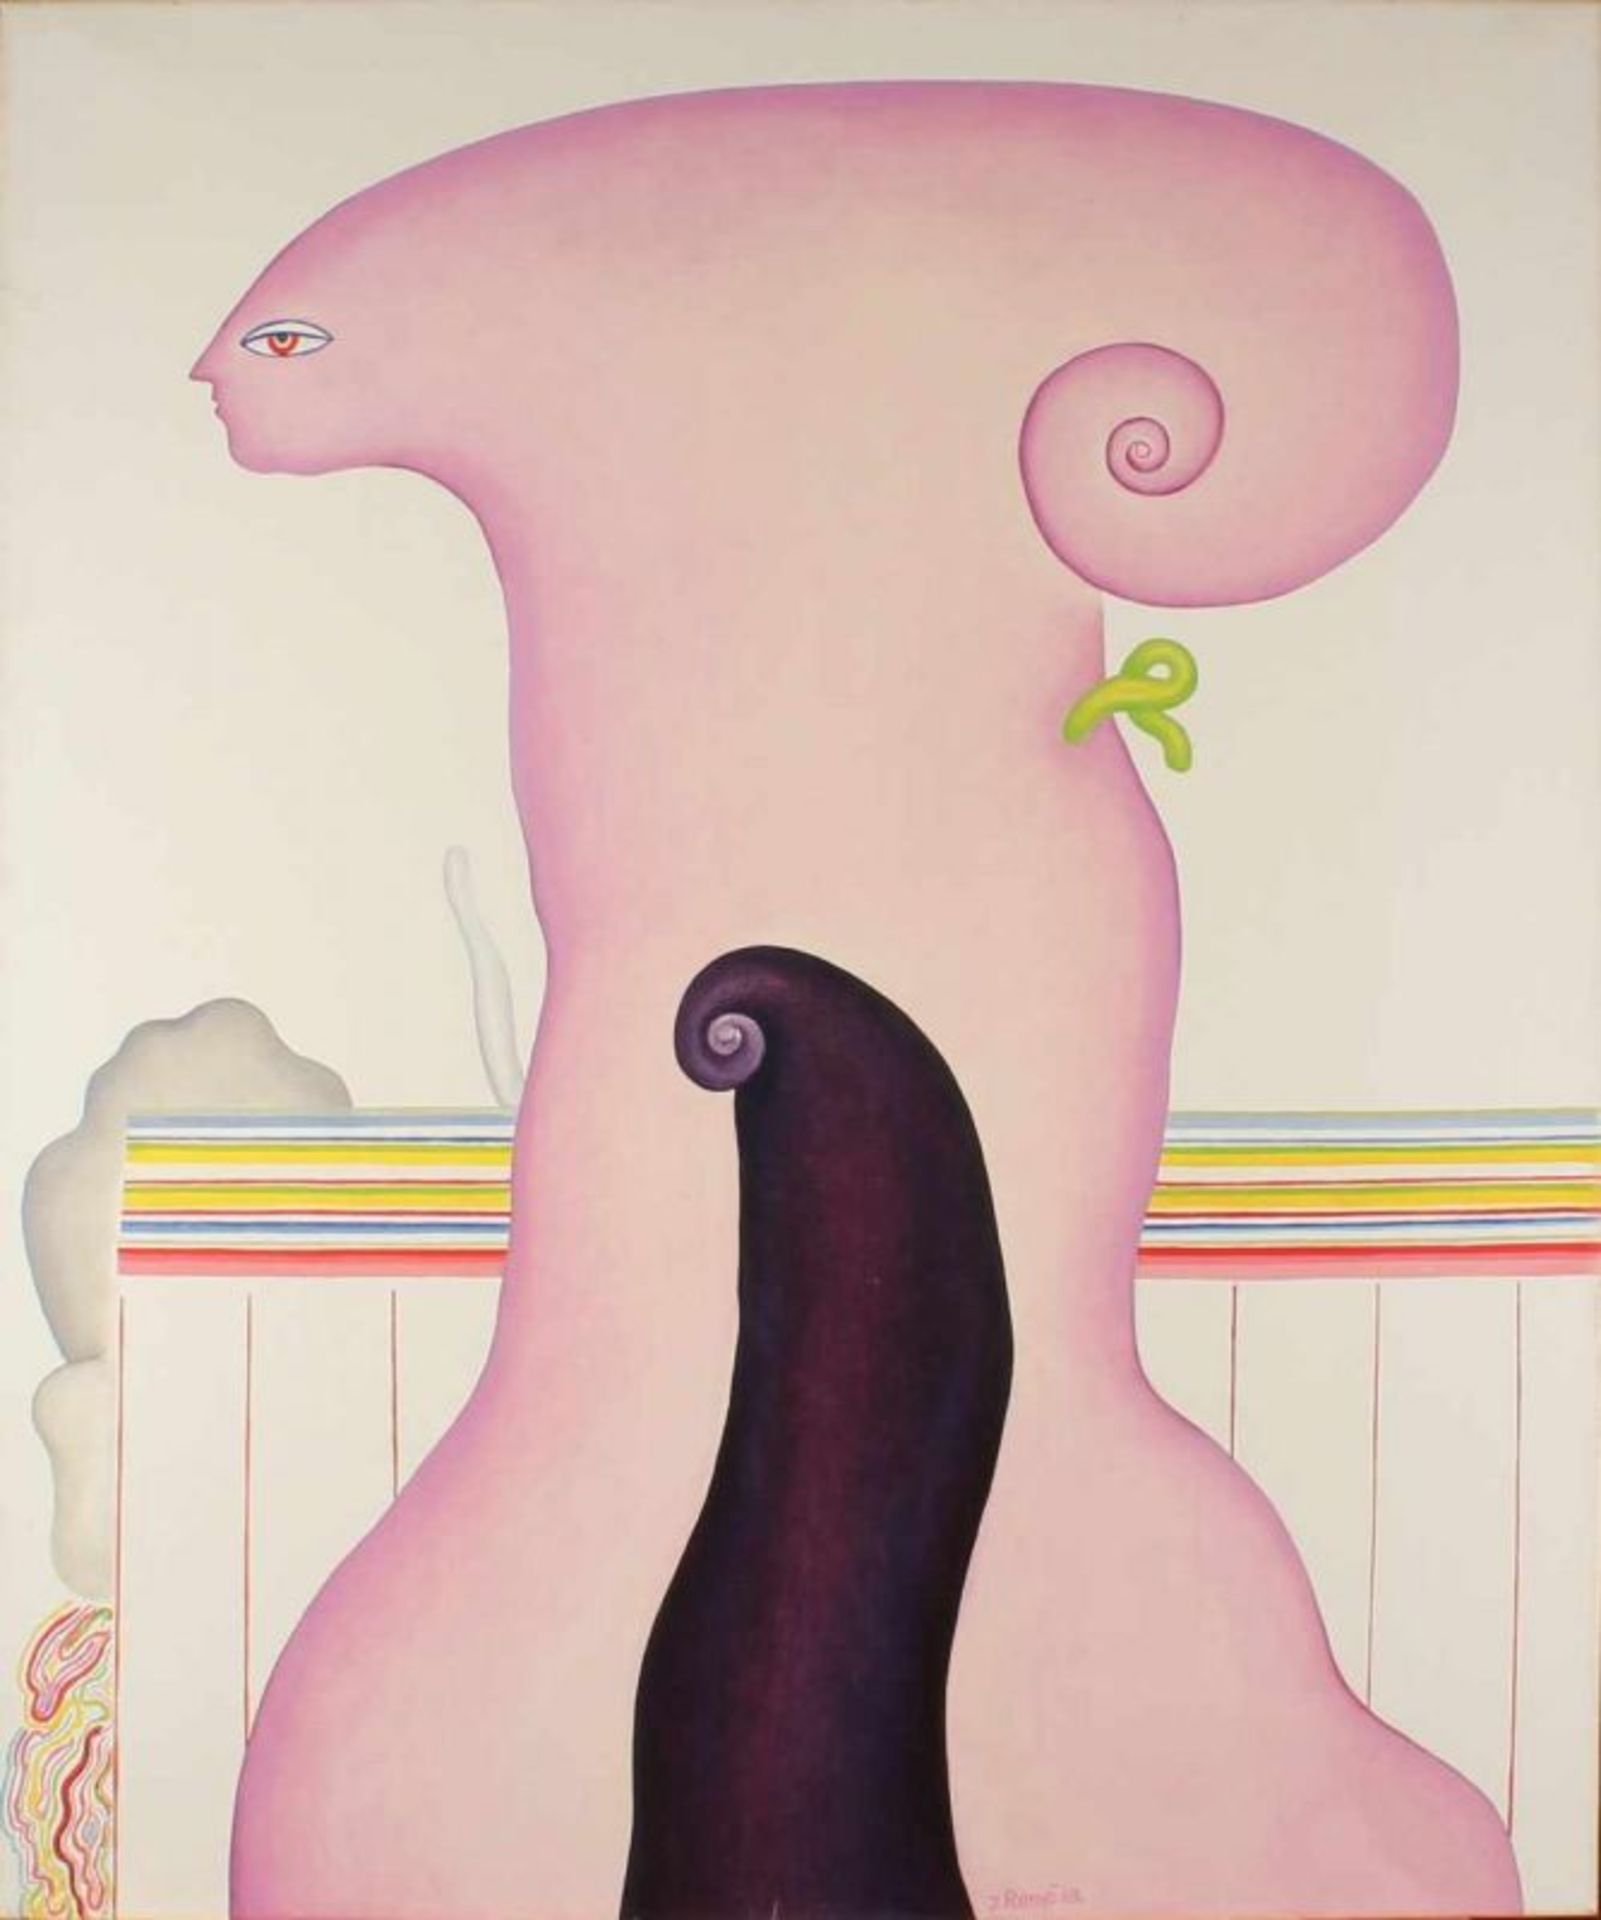 Jörg Remé 1969. 1941-. Presentation: Surreal woman figure. Oil on linen. Dim. 110x90 cm. Cond .: